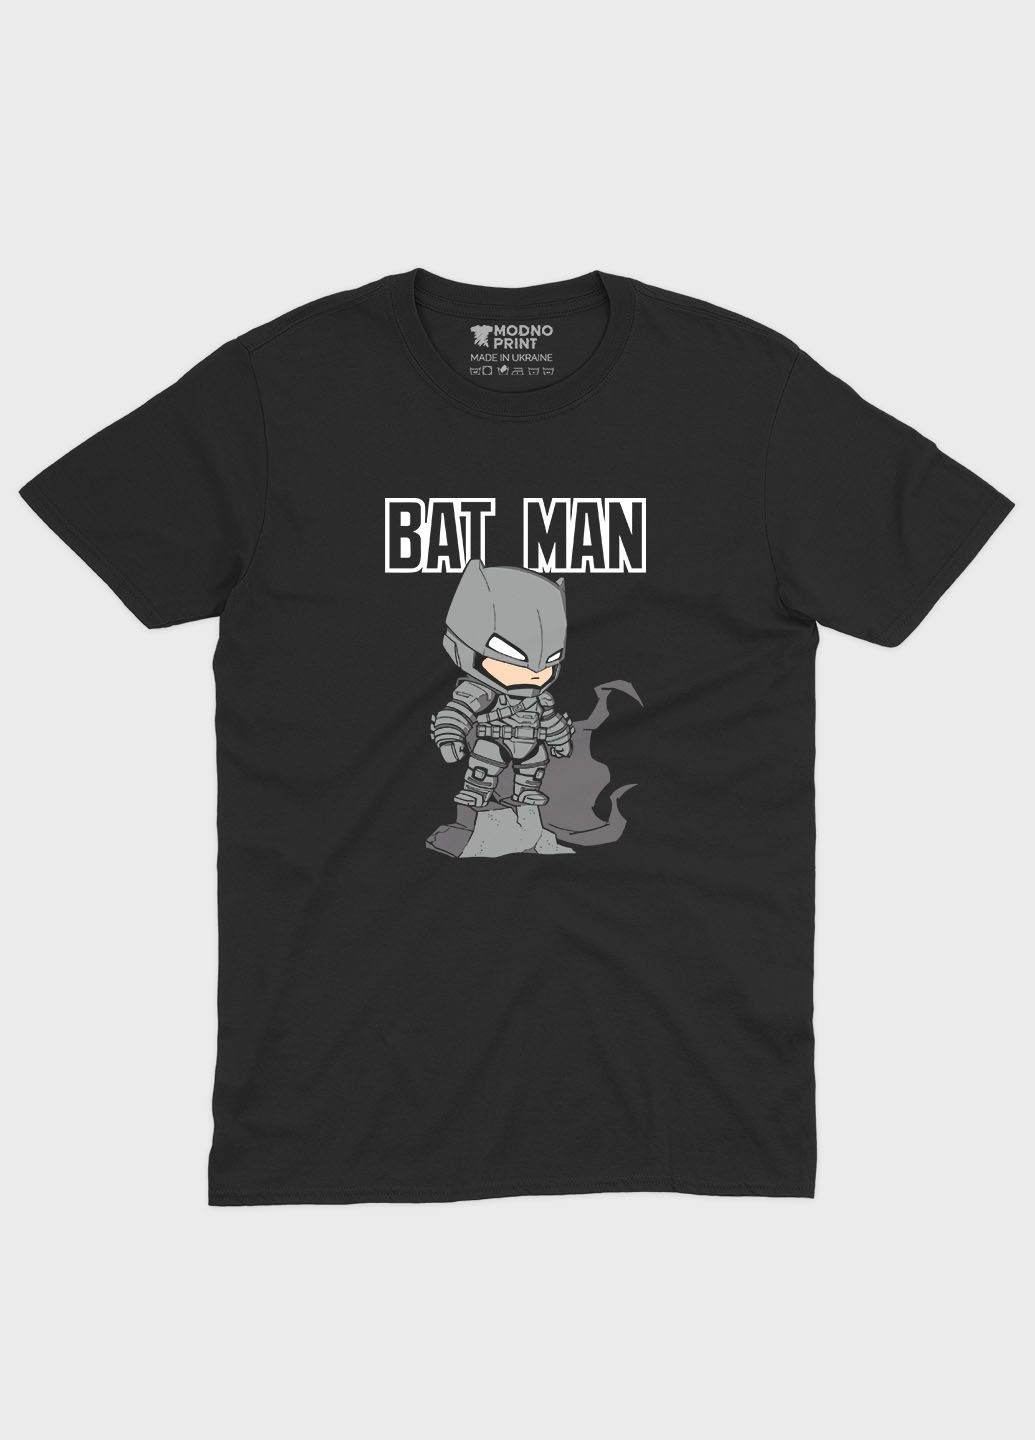 Чорна демісезонна футболка для дівчинки з принтом супергероя - бетмен (ts001-1-gl-006-003-014-g) Modno